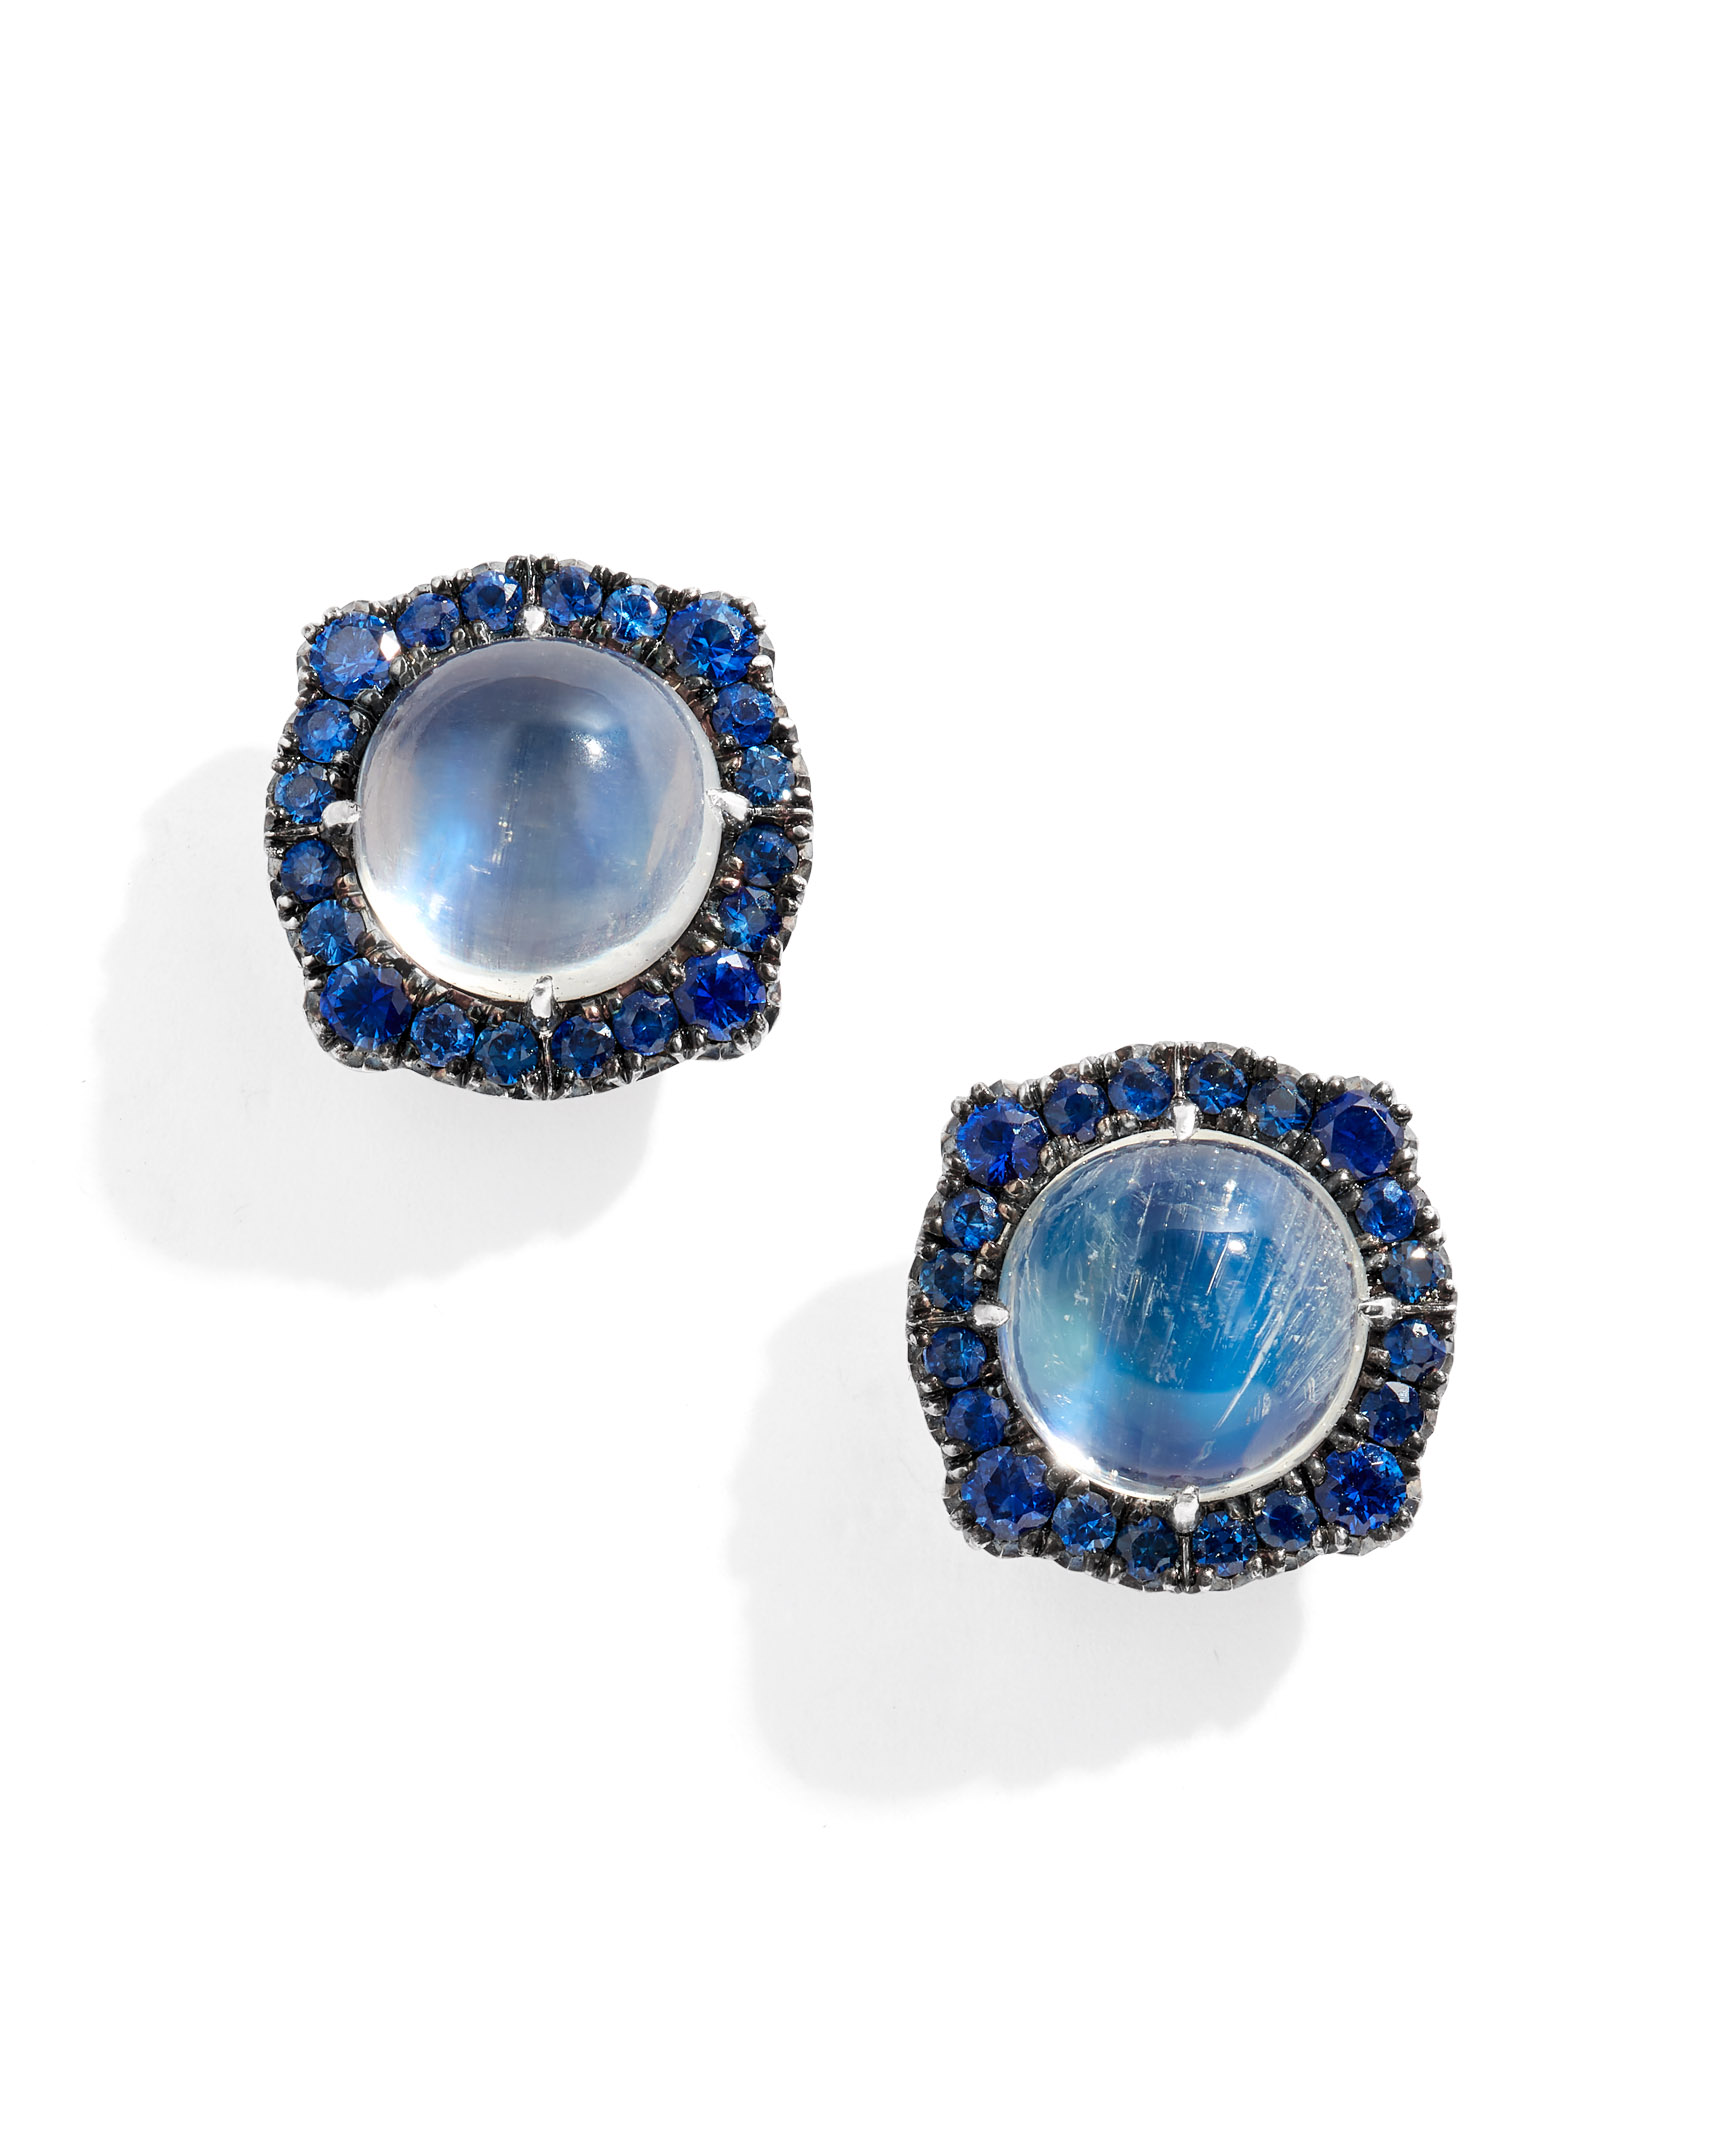 Hermès Special Order Horseshoe 30cm Gris Agate & Blue Saphir, Lot #58152